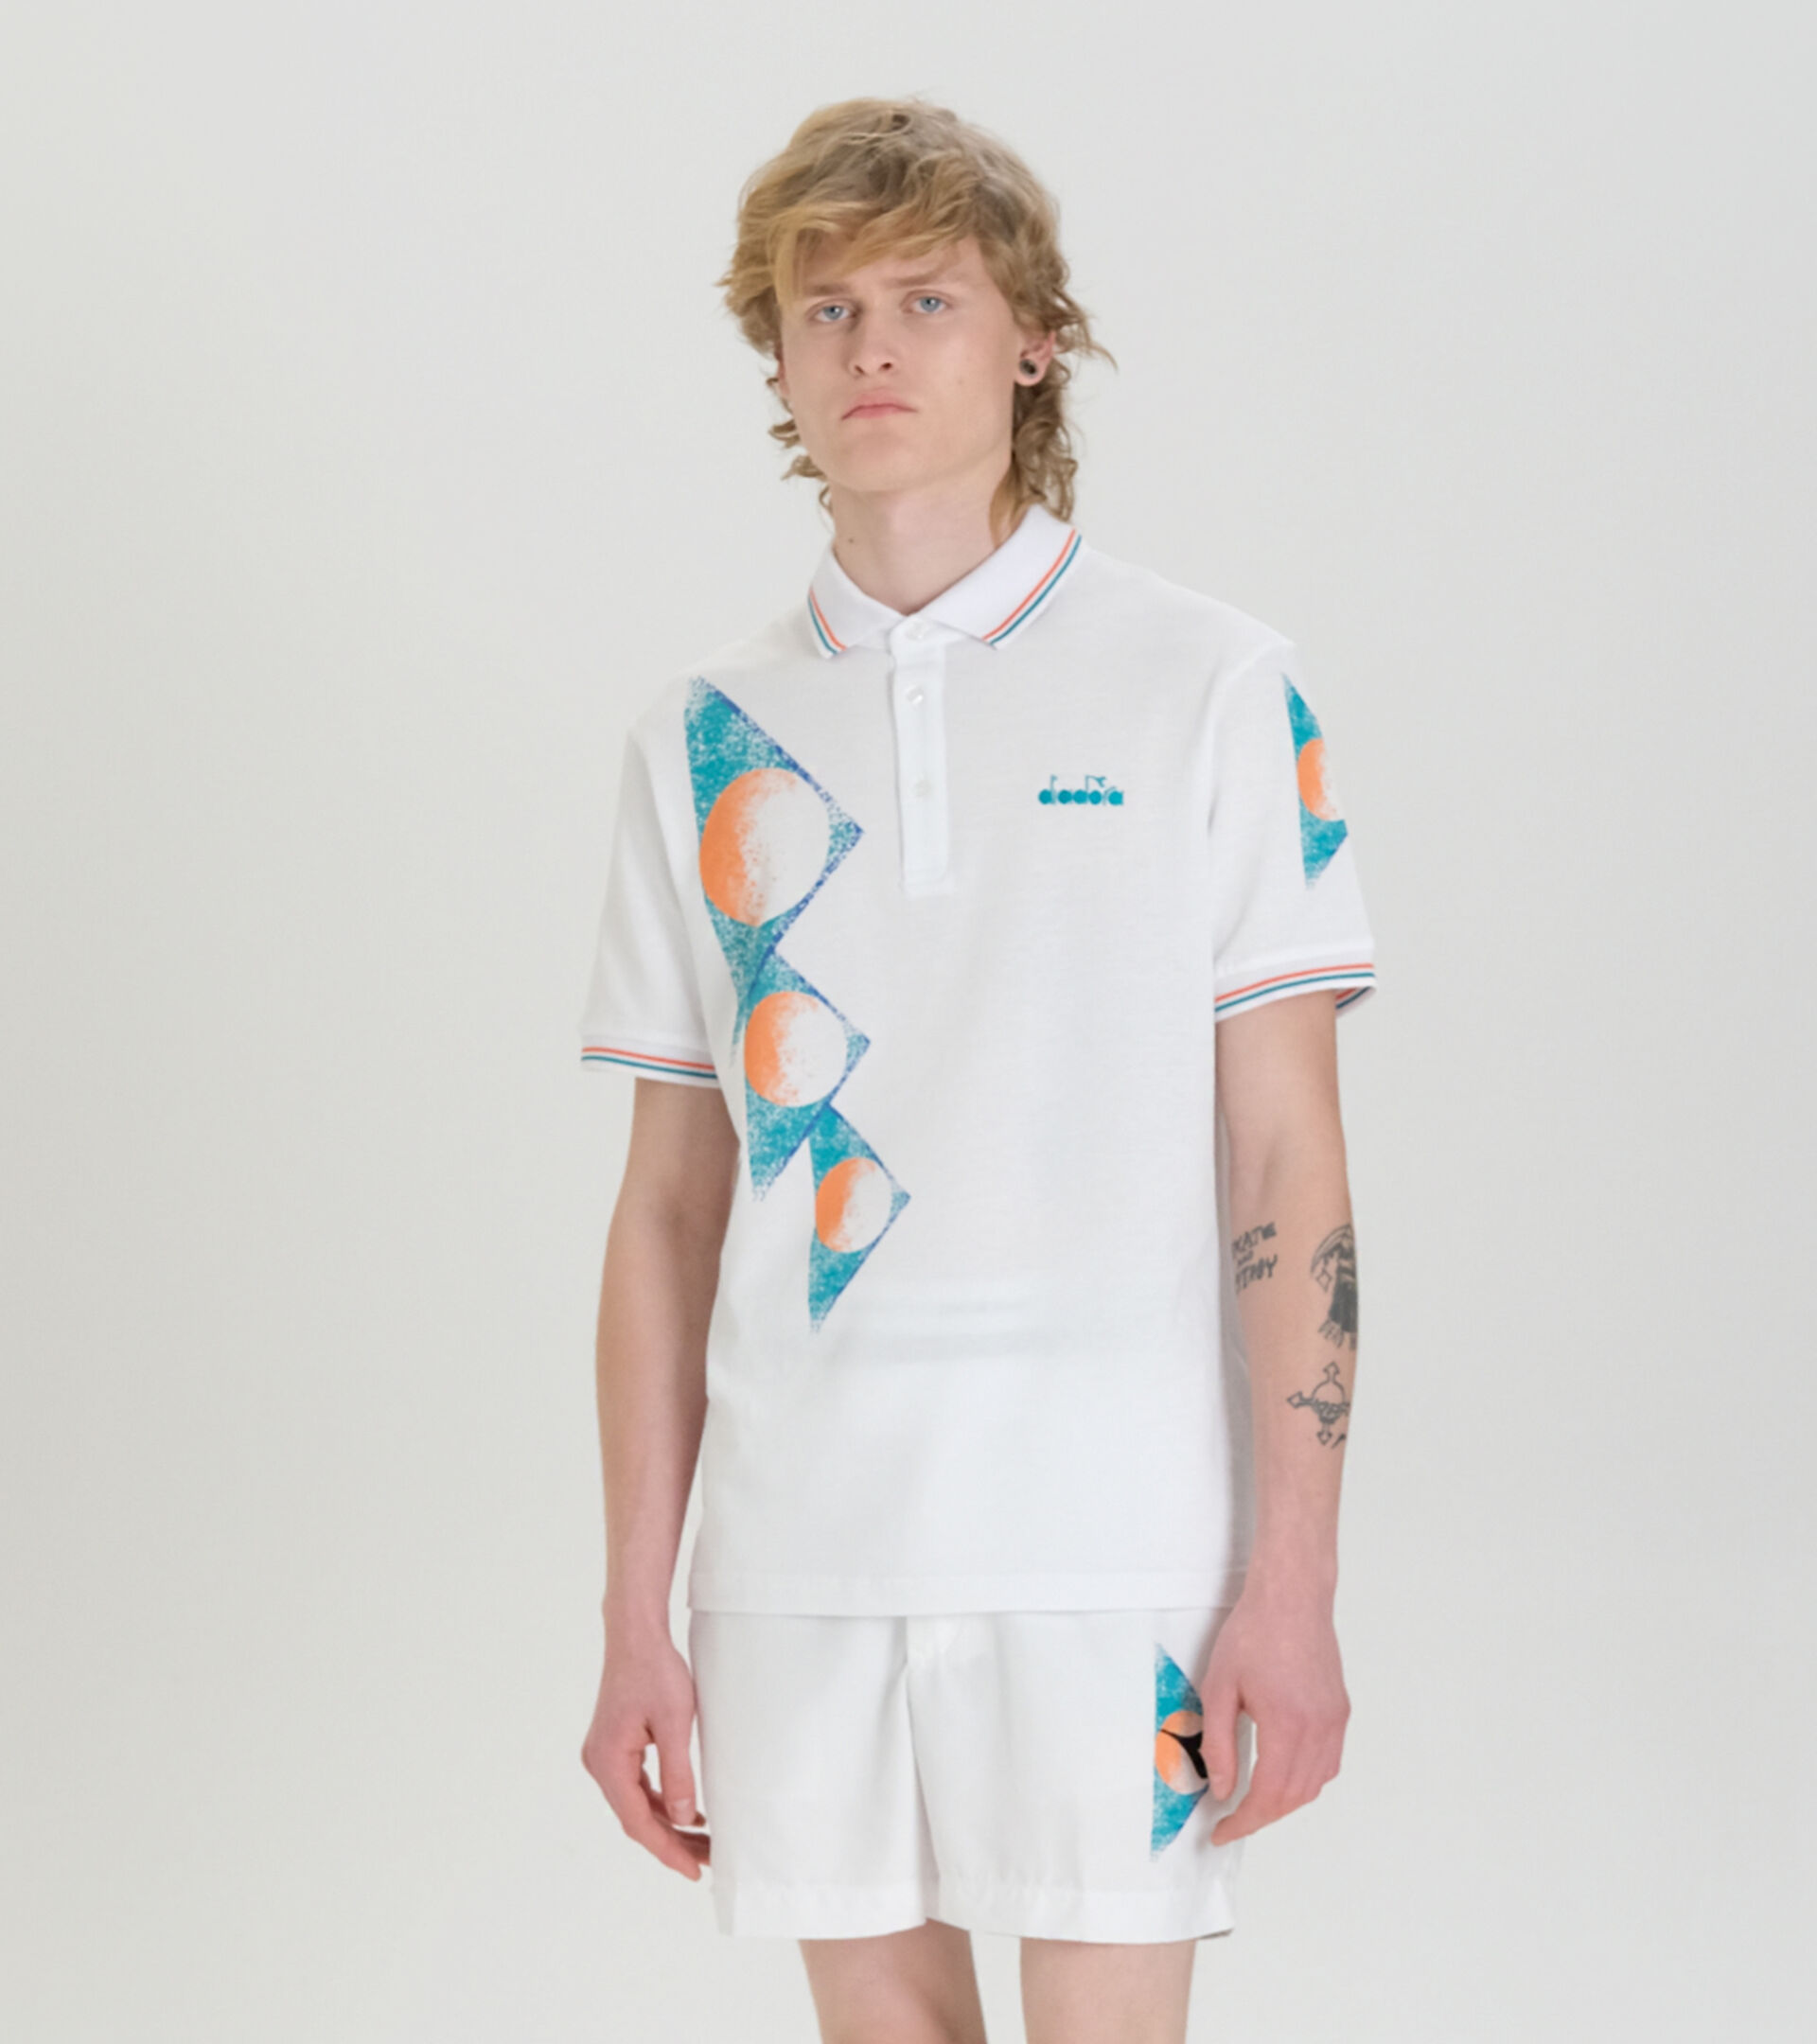 90s-inspired Polo shirt - Made in Italy - Men’s
 POLO SS TENNIS 90 OPTICAL WHITE - Diadora